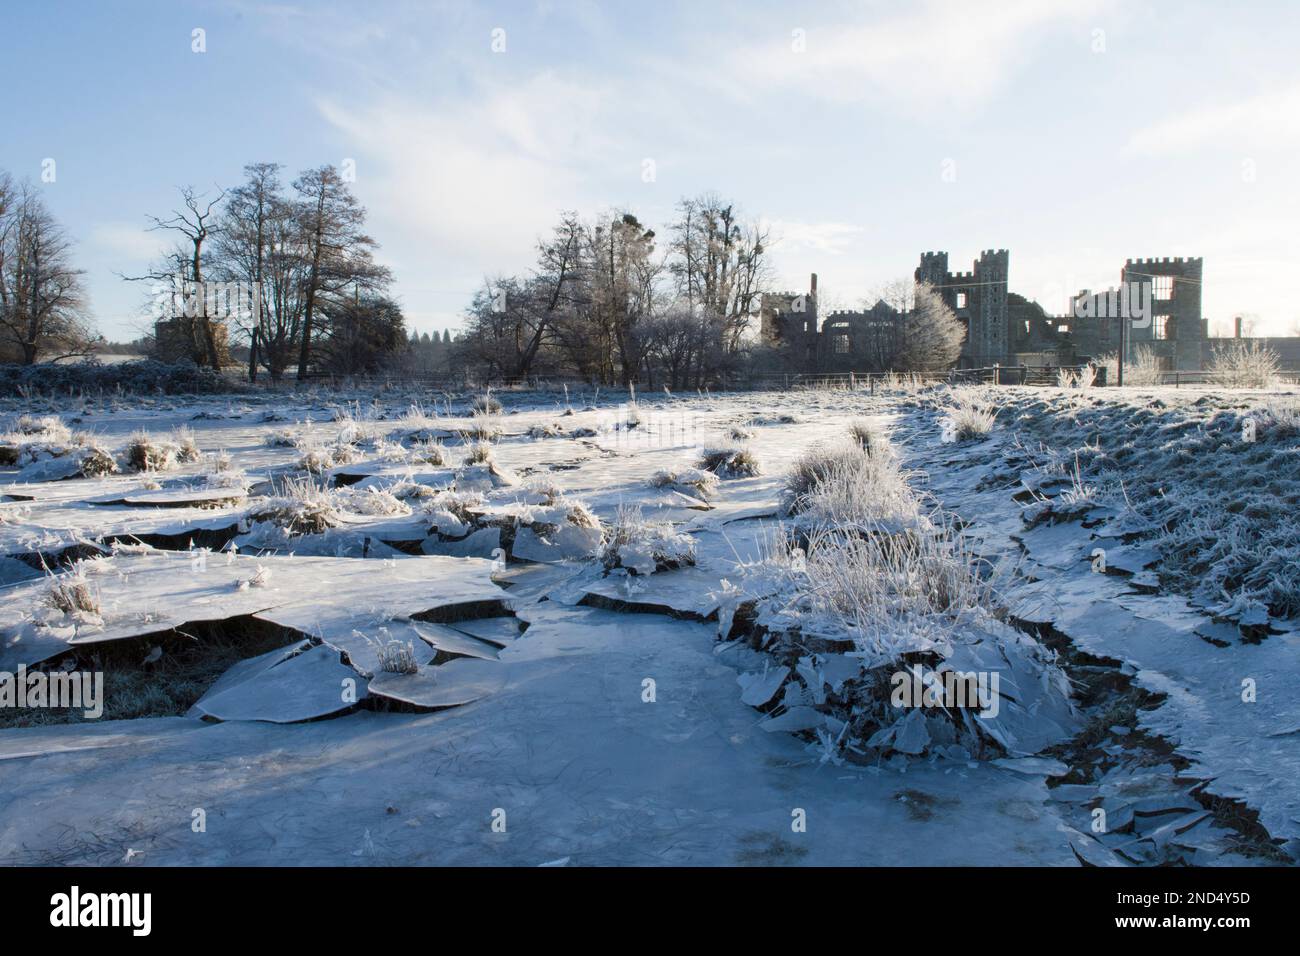 La glace s'est effondrée, le champ a été inondé puis gelé, l'eau s'est évacuée en laissant la glace suspendue qui s'est ensuite effondrée, dans le champ, les ruines de Cowdray, Sussex, Banque D'Images